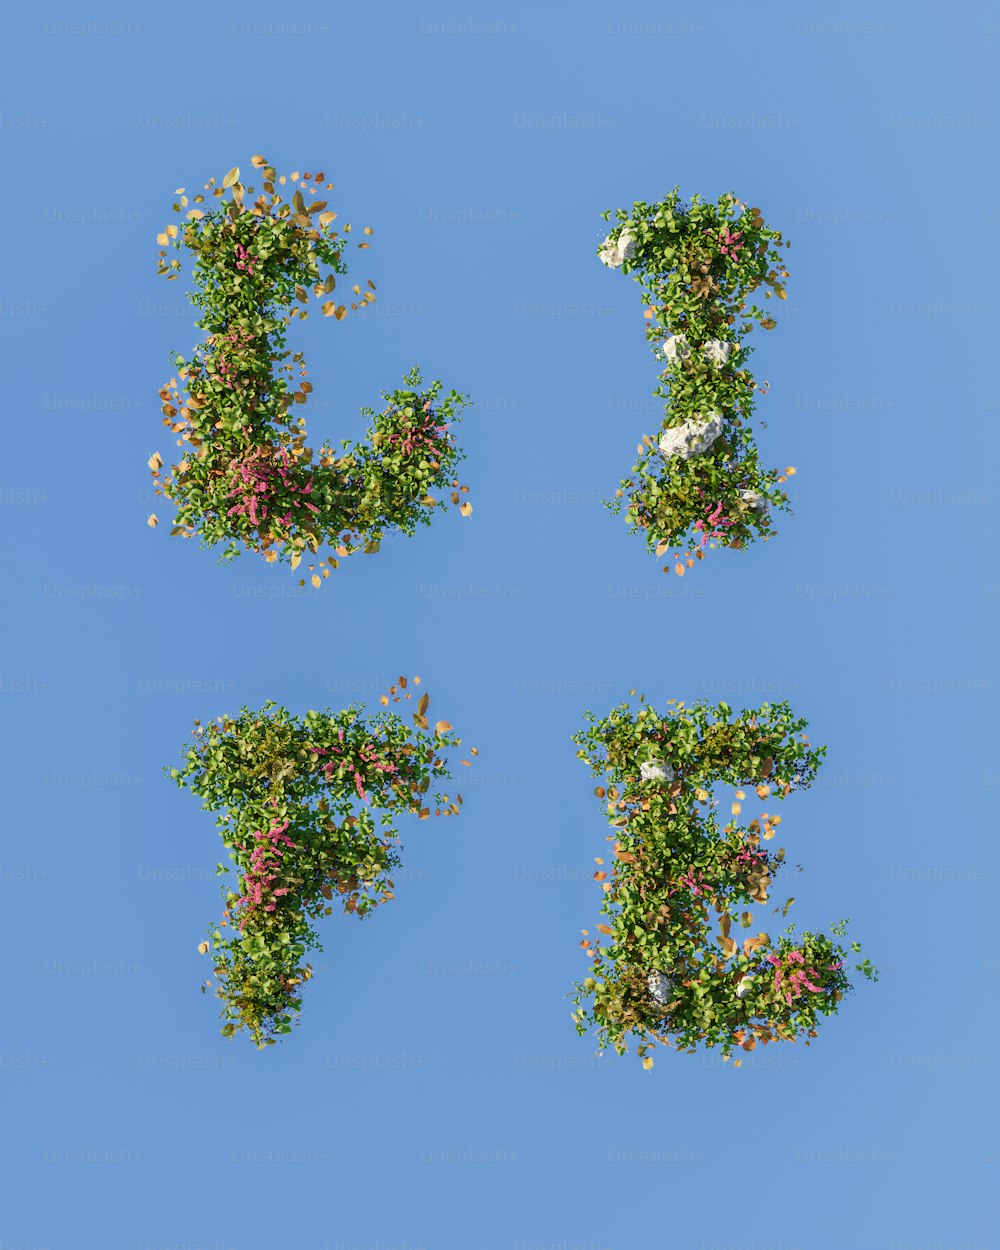 As letras E, F e F são feitas de flores